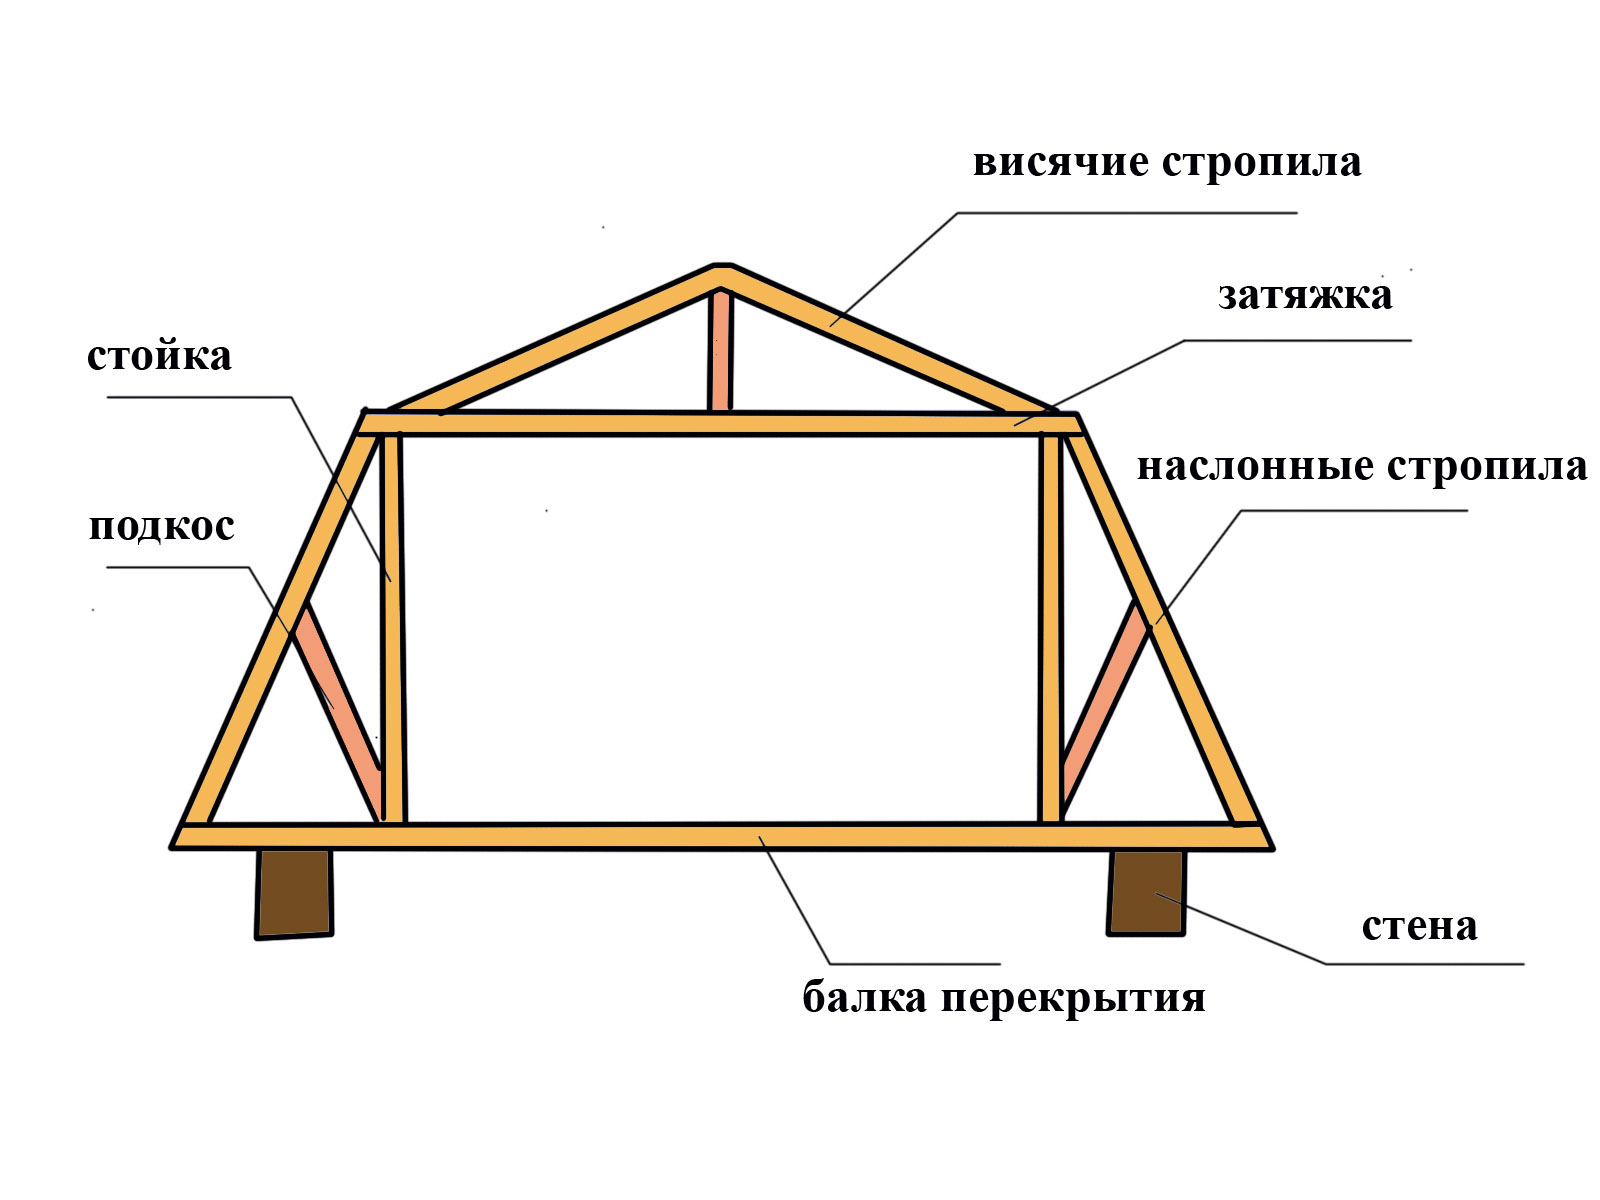 Как построить ломаную крышу своими руками – простые инструкции для самостоятельного выполнения - krovlyakryshi.ru
как построить ломаную крышу своими руками – простые инструкции для самостоятельного выполнения - krovlyakryshi.ru